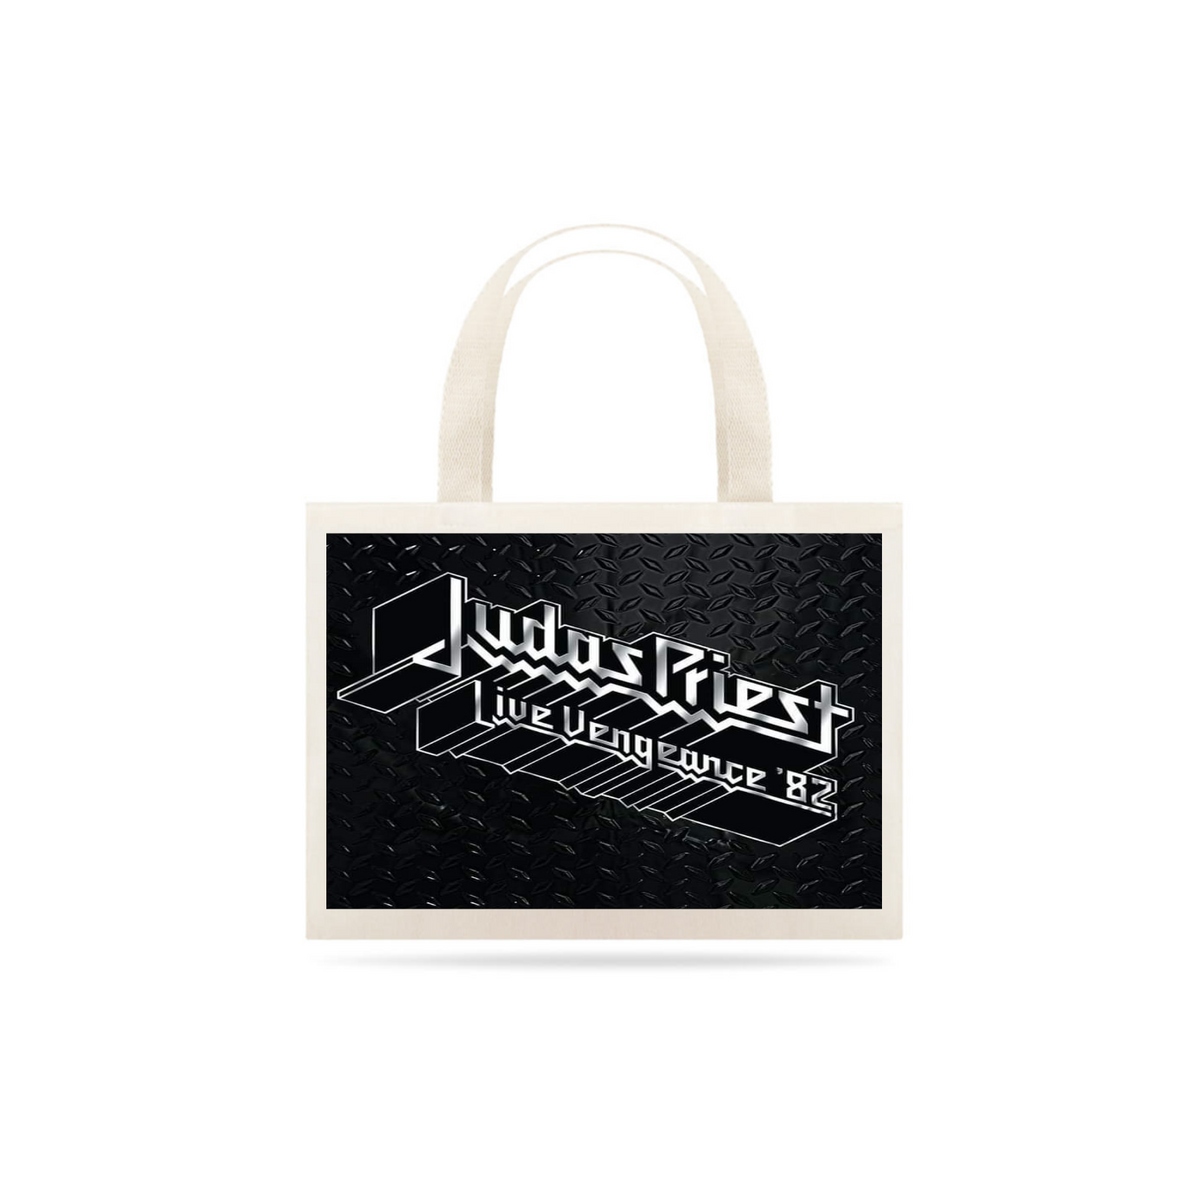 Nome do produto: Judas Priest - Live Vengeance 82